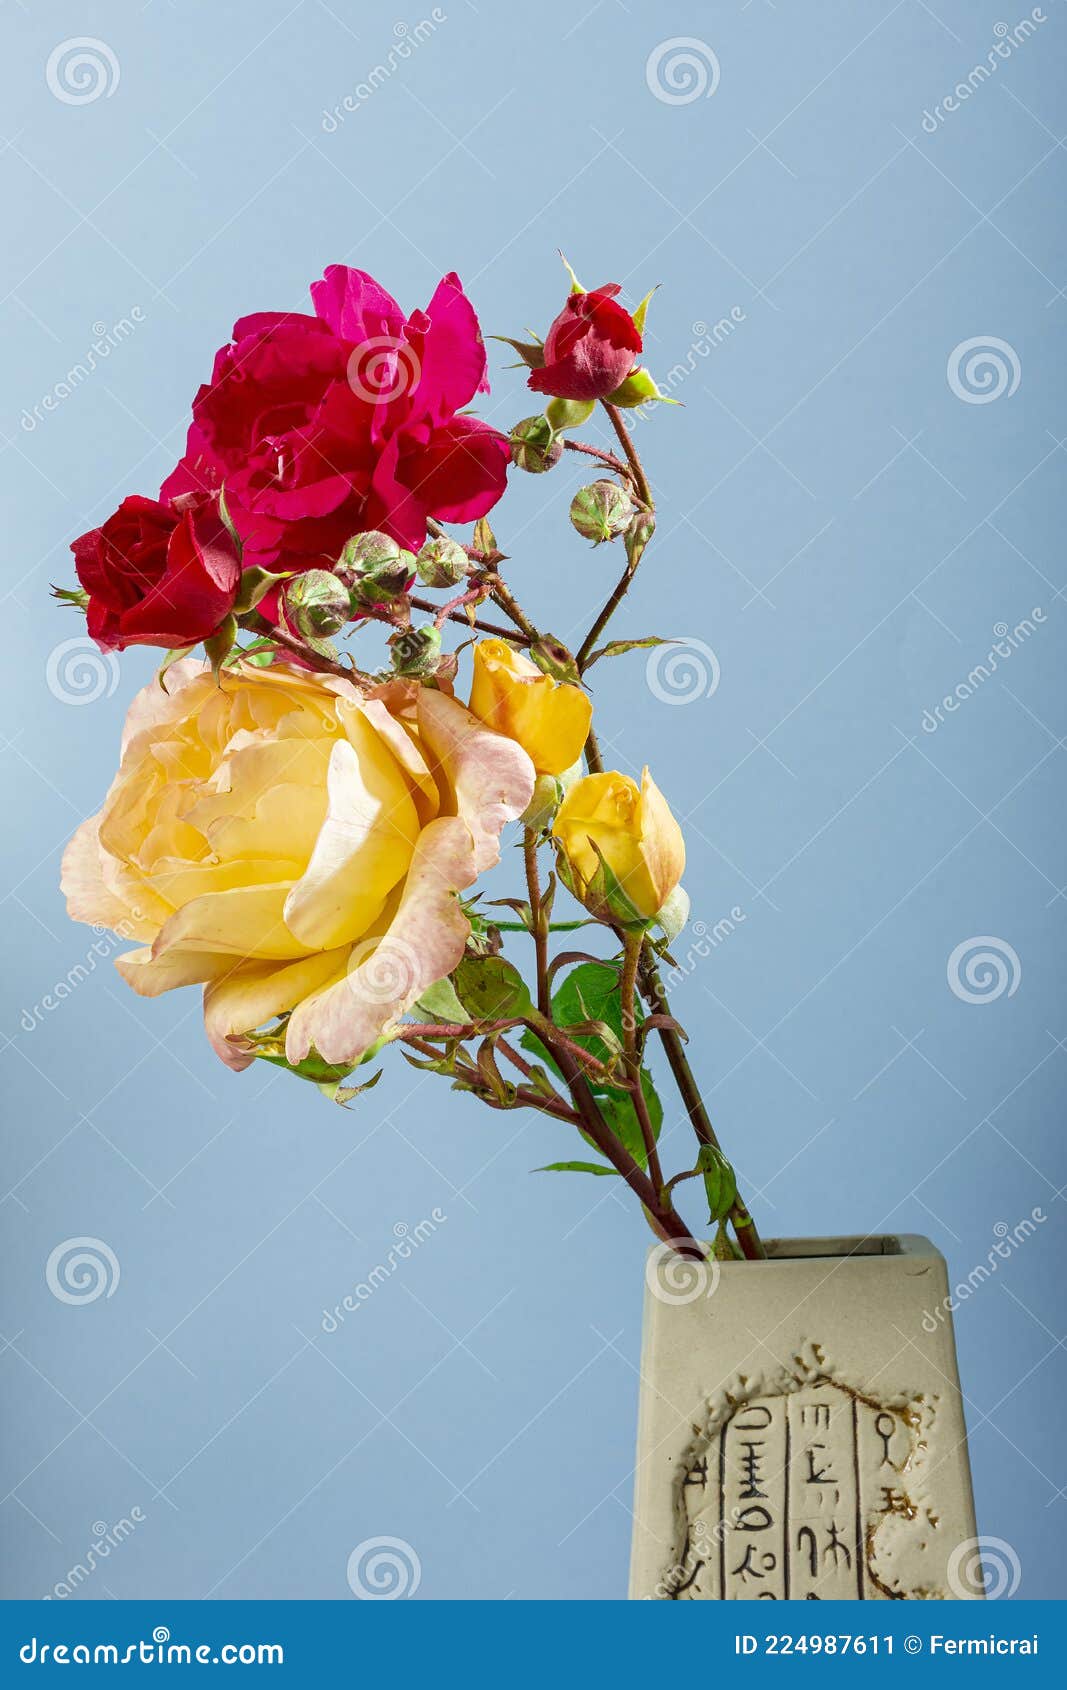 Fotografia De Um Buquê De Flores Naturais De Rosas Vermelhas E Amarelas Num  Vaso Castanho Num Fundo Azul, a Fotografia Foi Tirada Imagem de Stock -  Imagem de decorativo, flor: 224987611